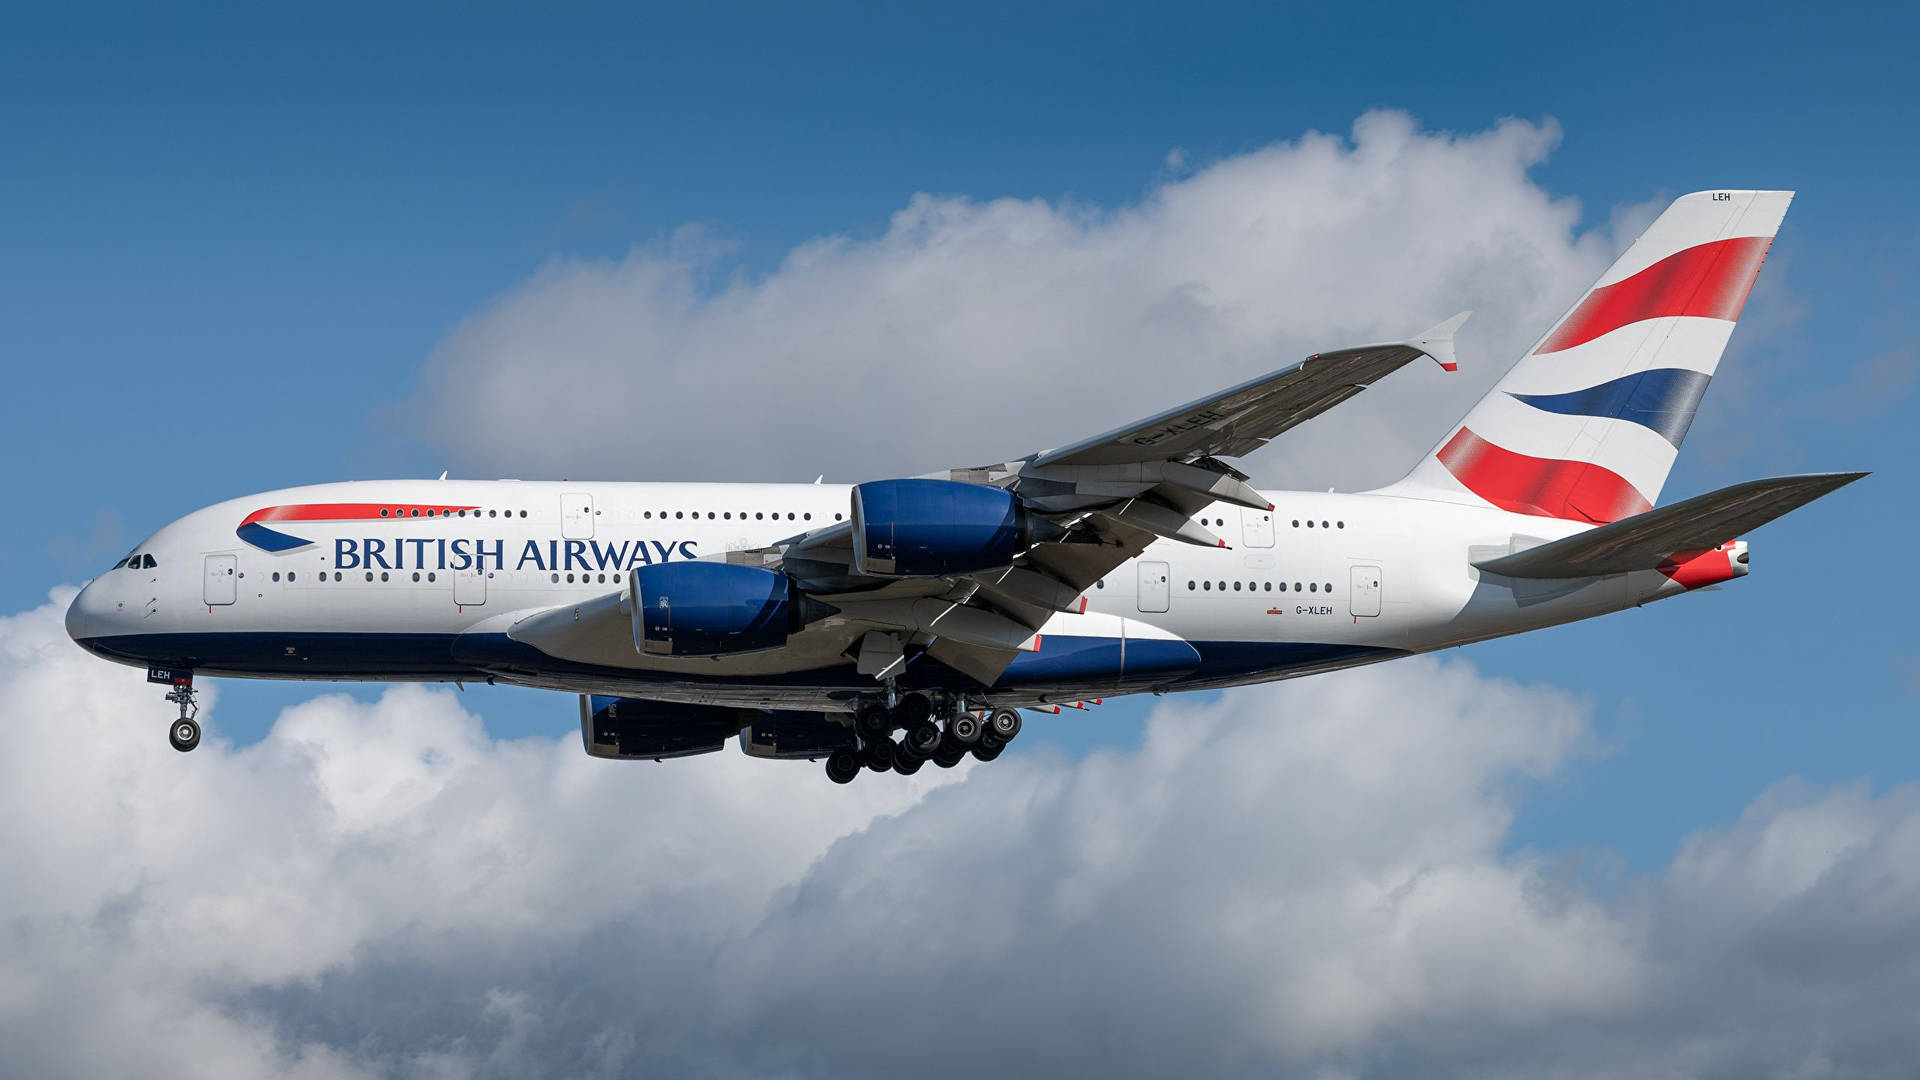 British Airways Airbus On A Flight Wallpaper